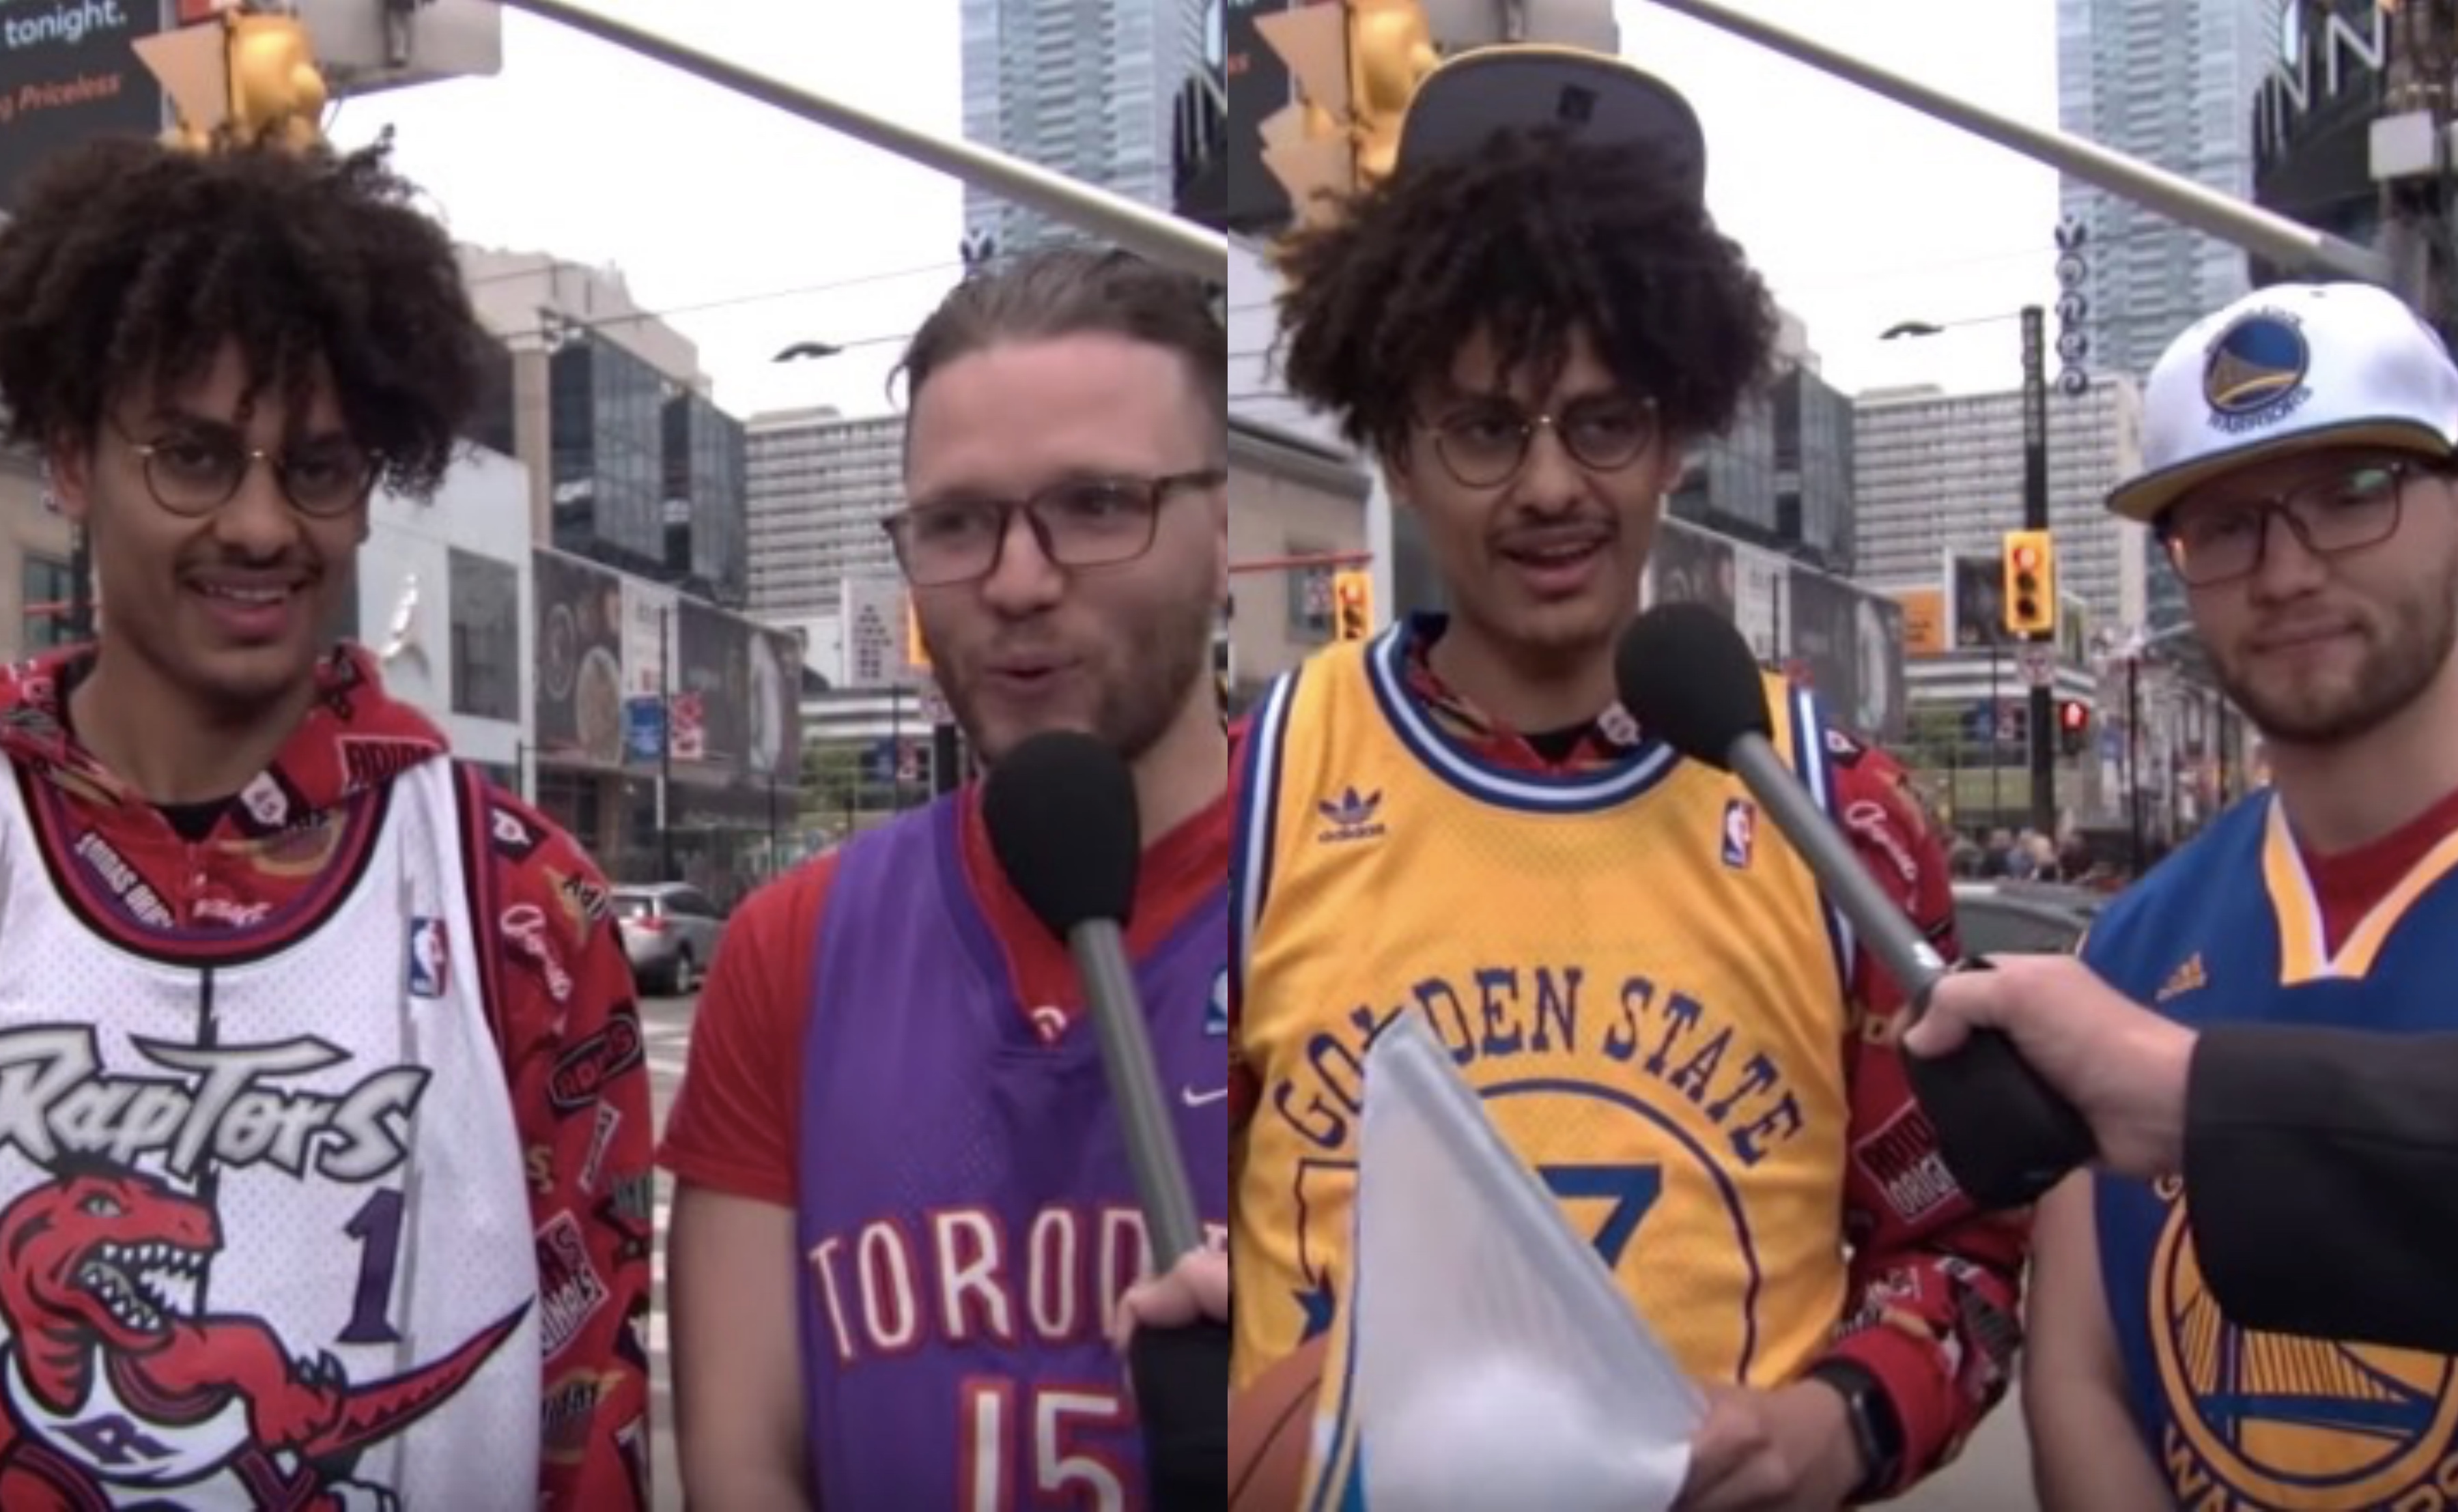 Outerwear - Toronto Raptors Apparel & Jerseys